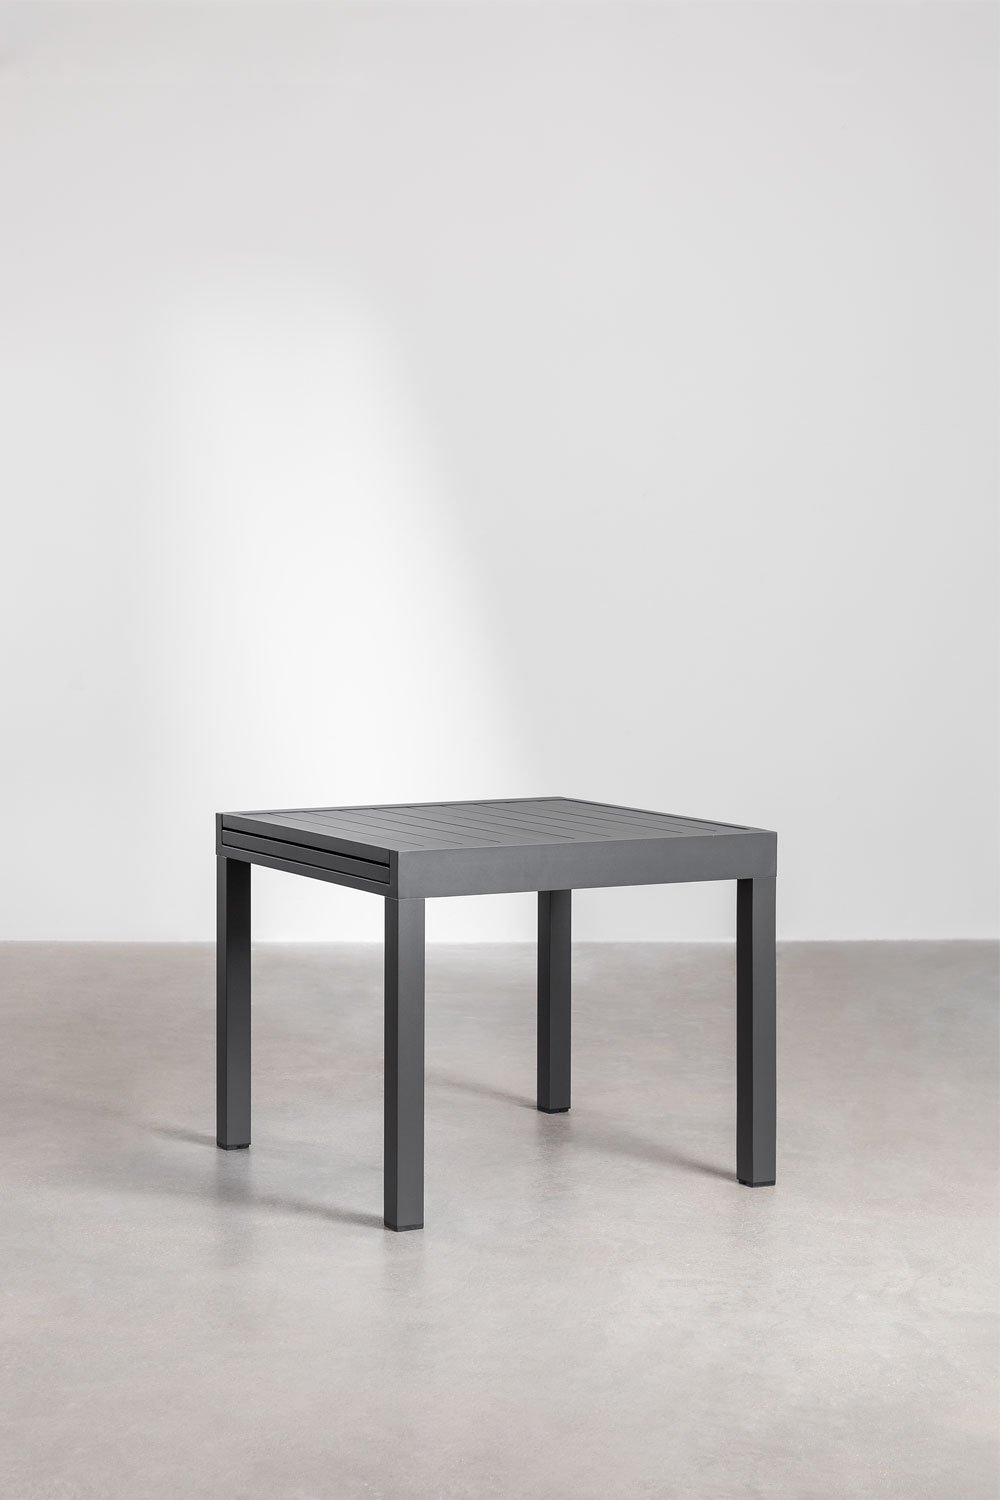 Table de jardin extensible rectangulaire en aluminium (90-180x90 cm) Starmi, image de la galerie 1